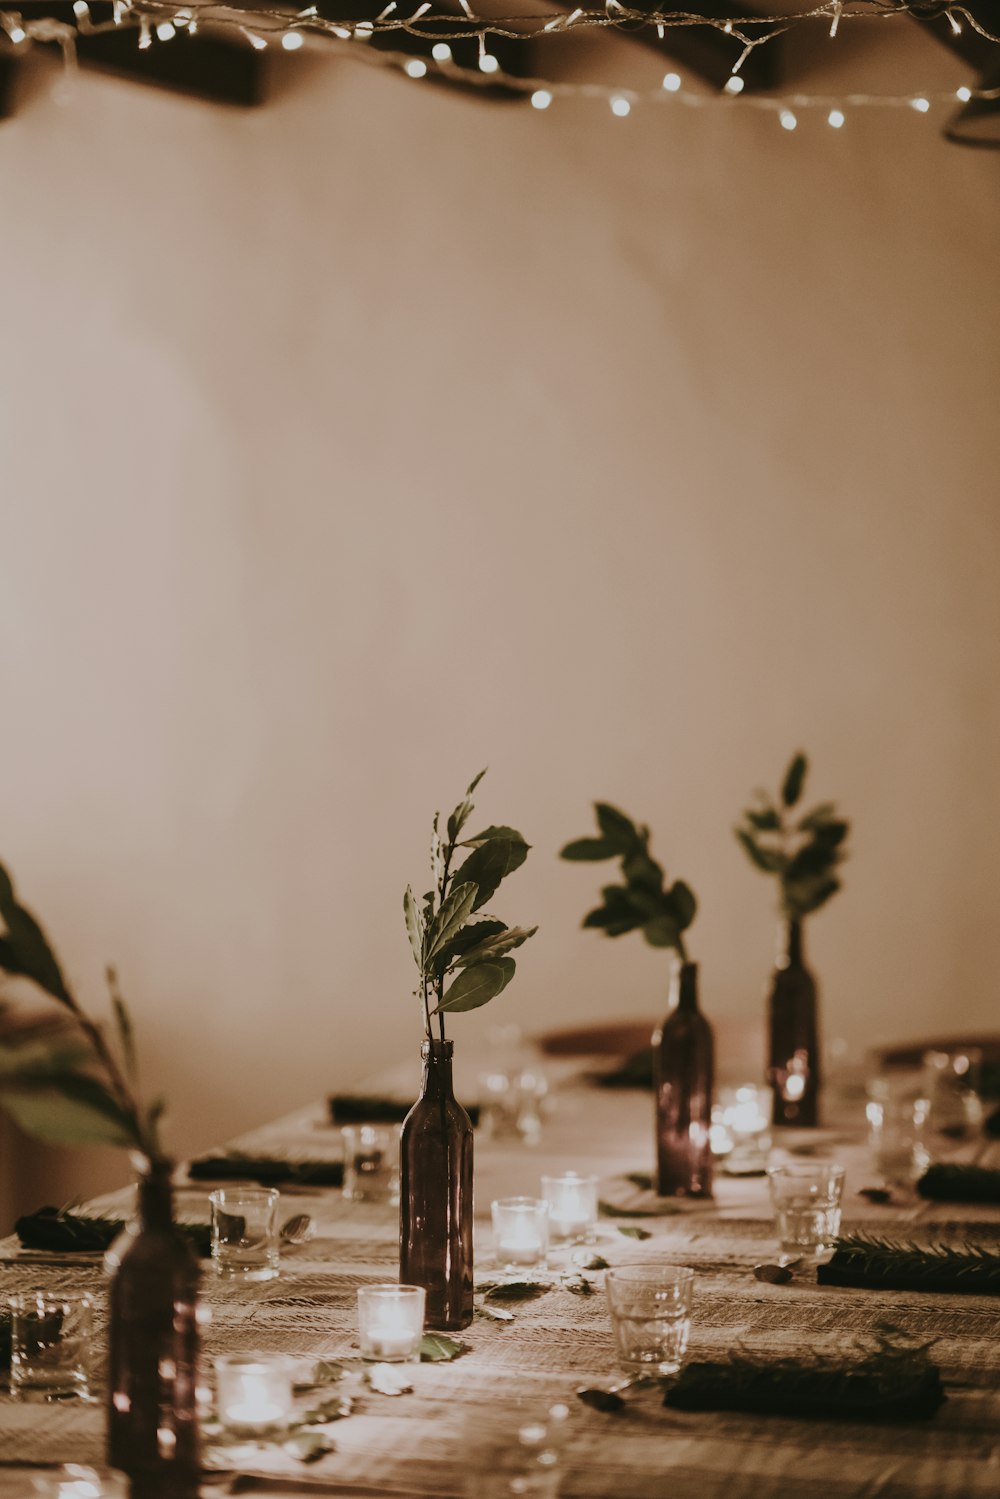 Bicchieri e fiori trasparenti sul tavolo vicino al muro